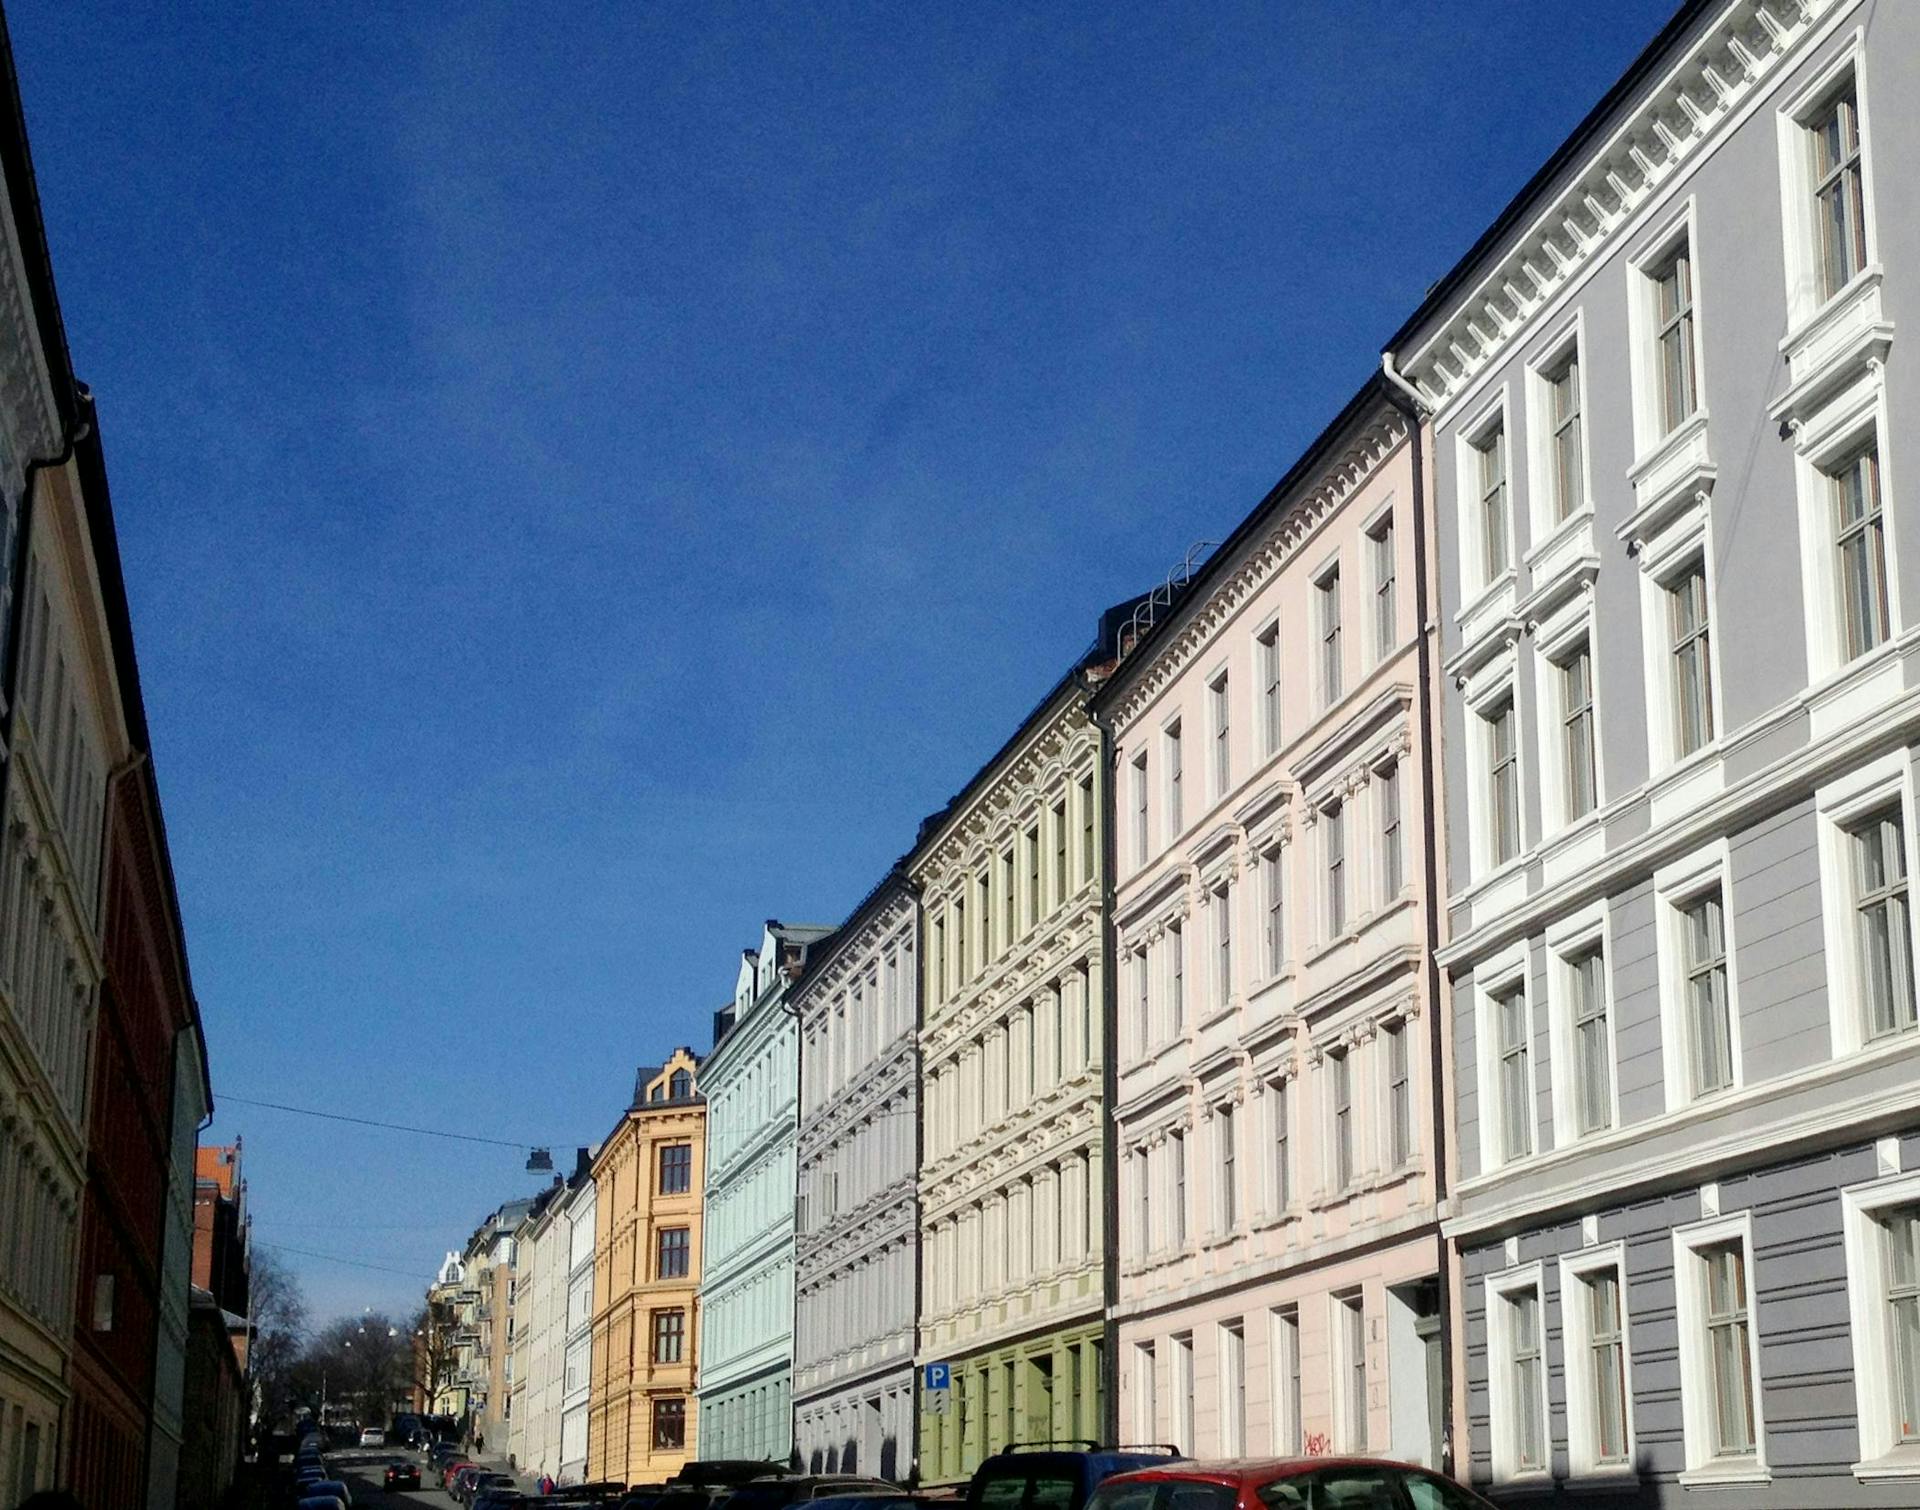 Pastel-coloured façades on a clear day in Grünerløkka